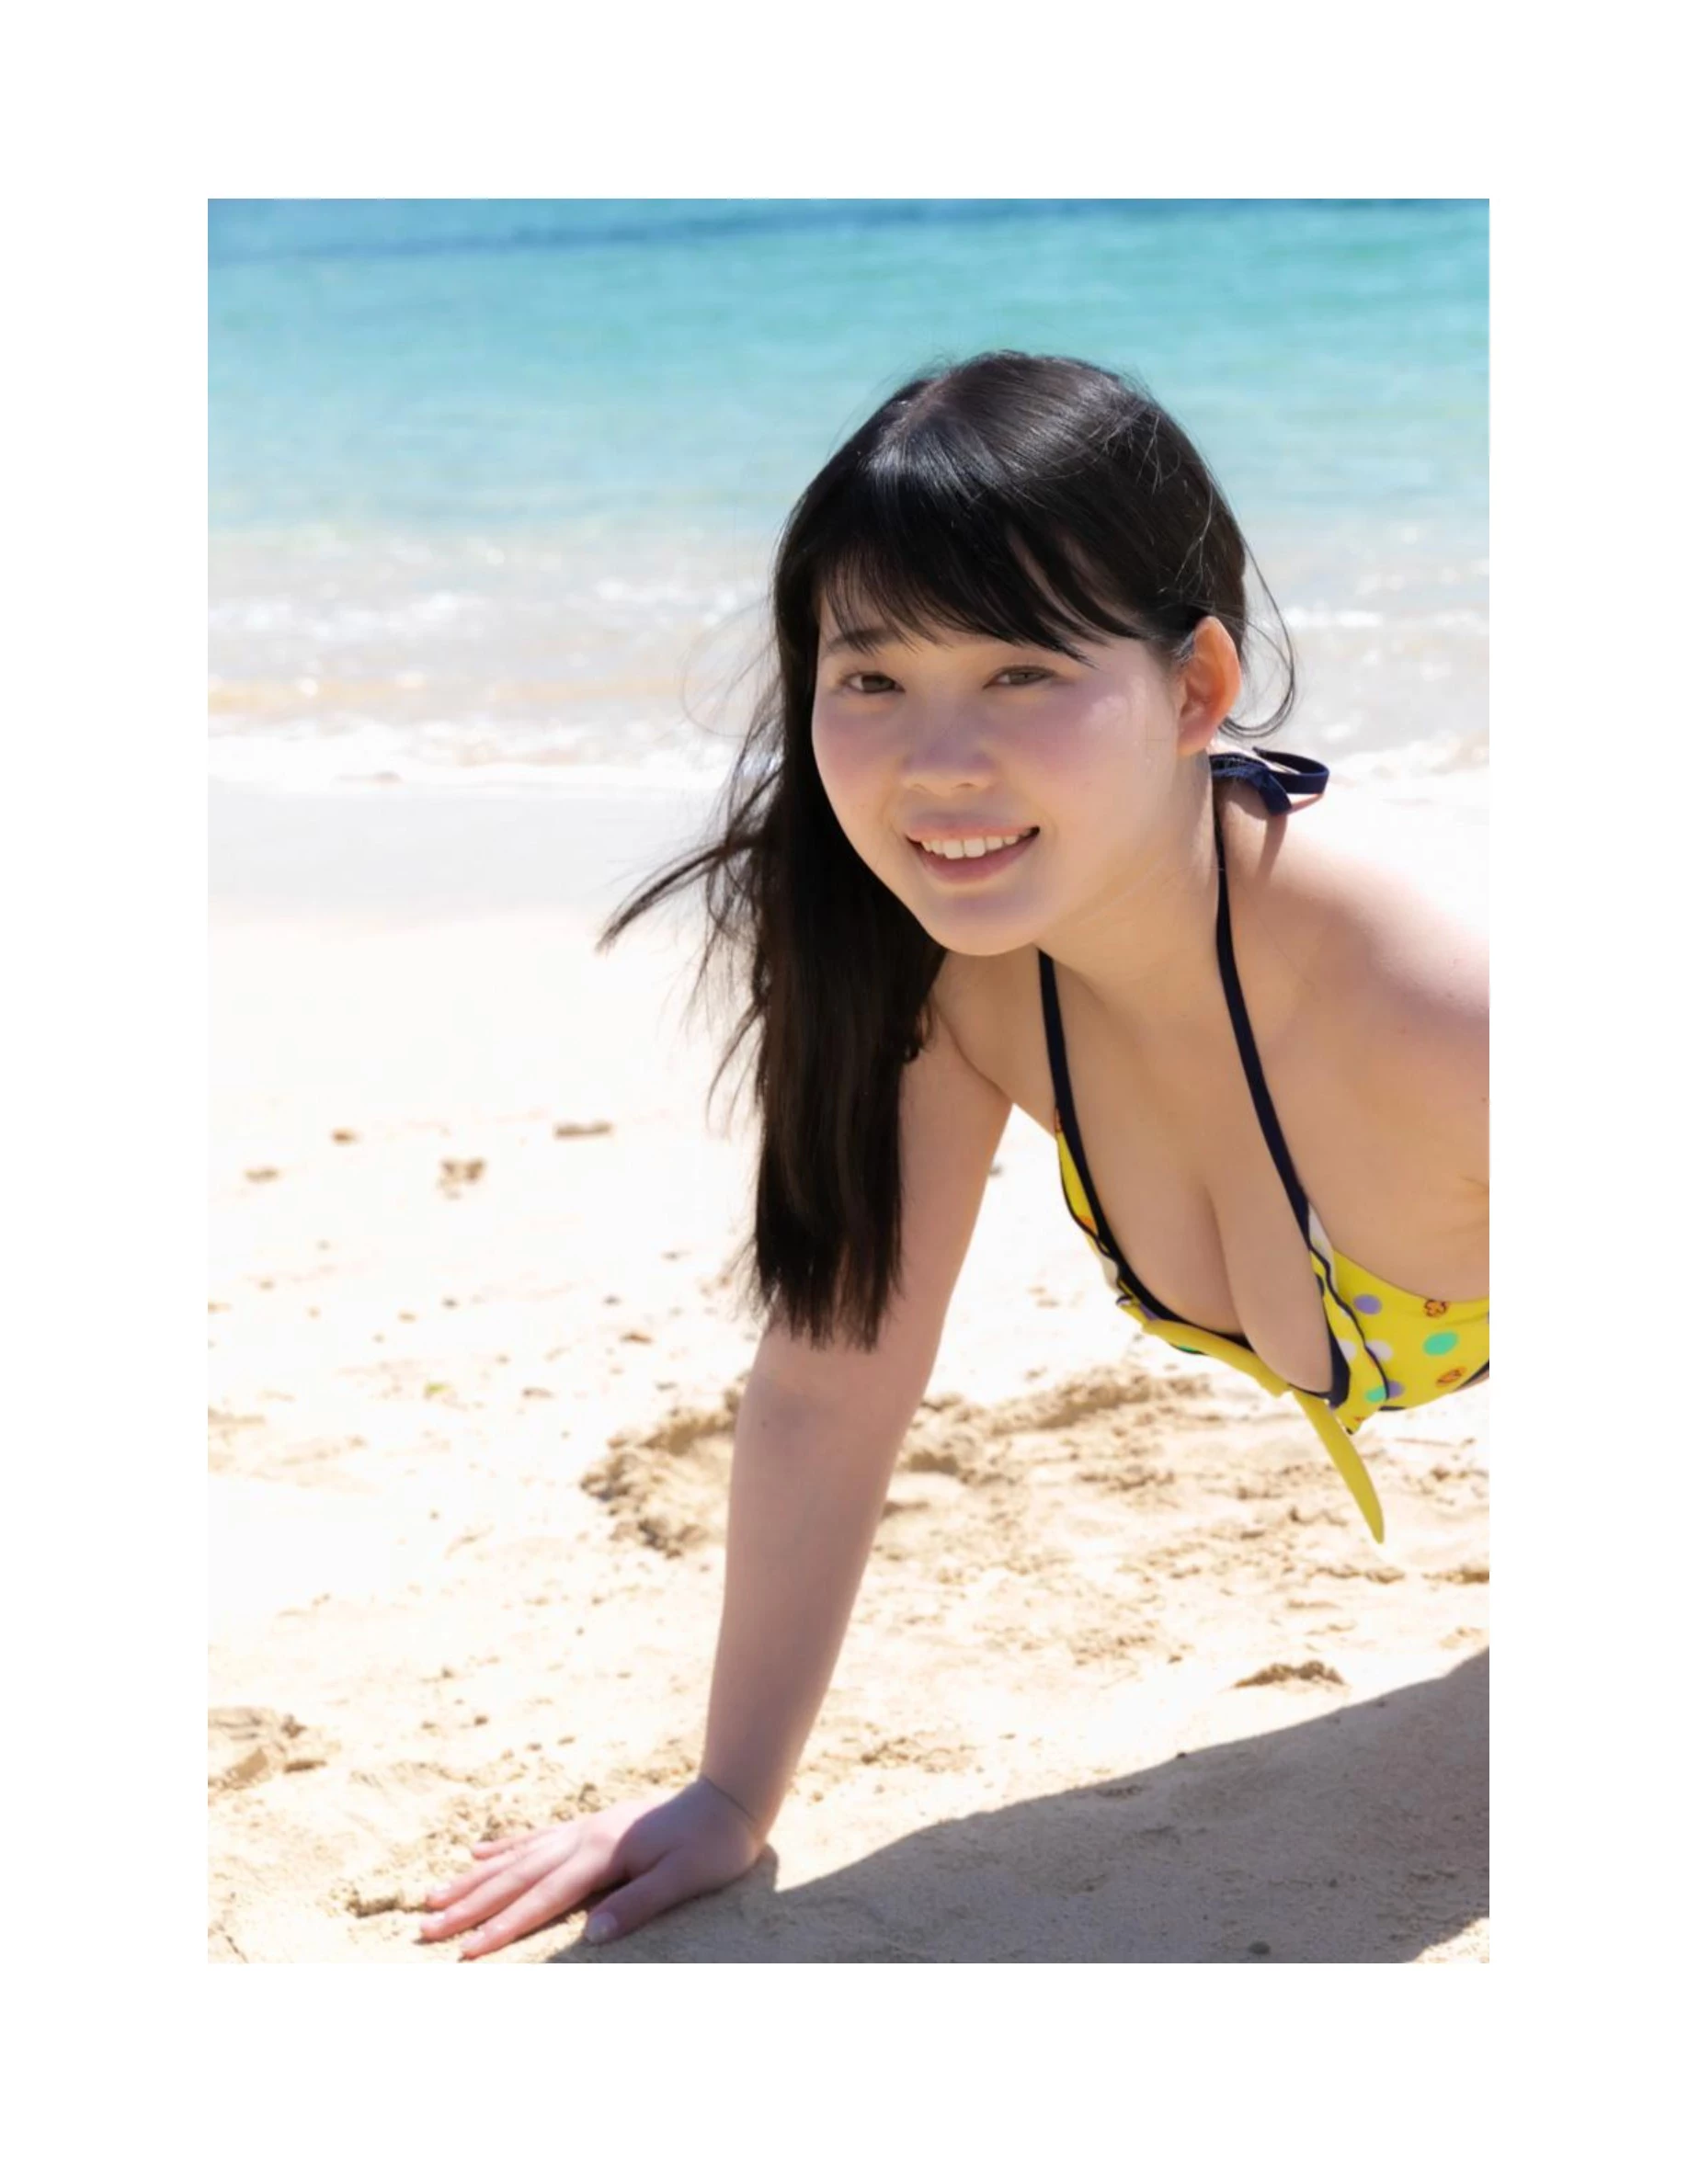 伊川愛梨 卒業旅行 夏 寫真集 J罩杯偶像美少女傳説-425